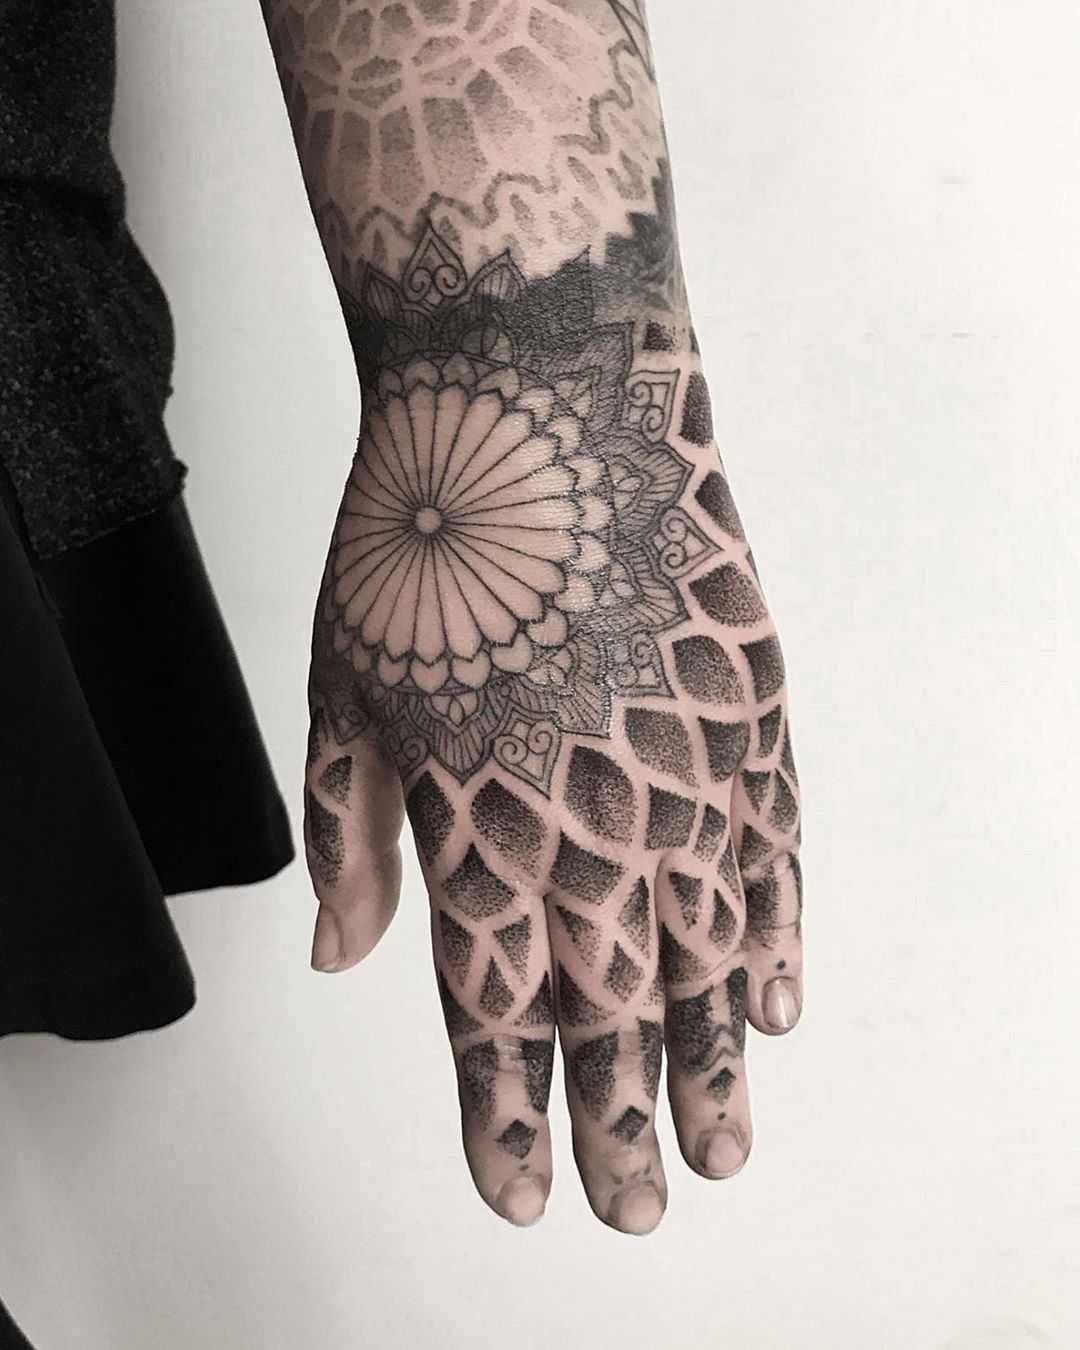 Left hand tattoo by tattooist Spence @zz tattoo